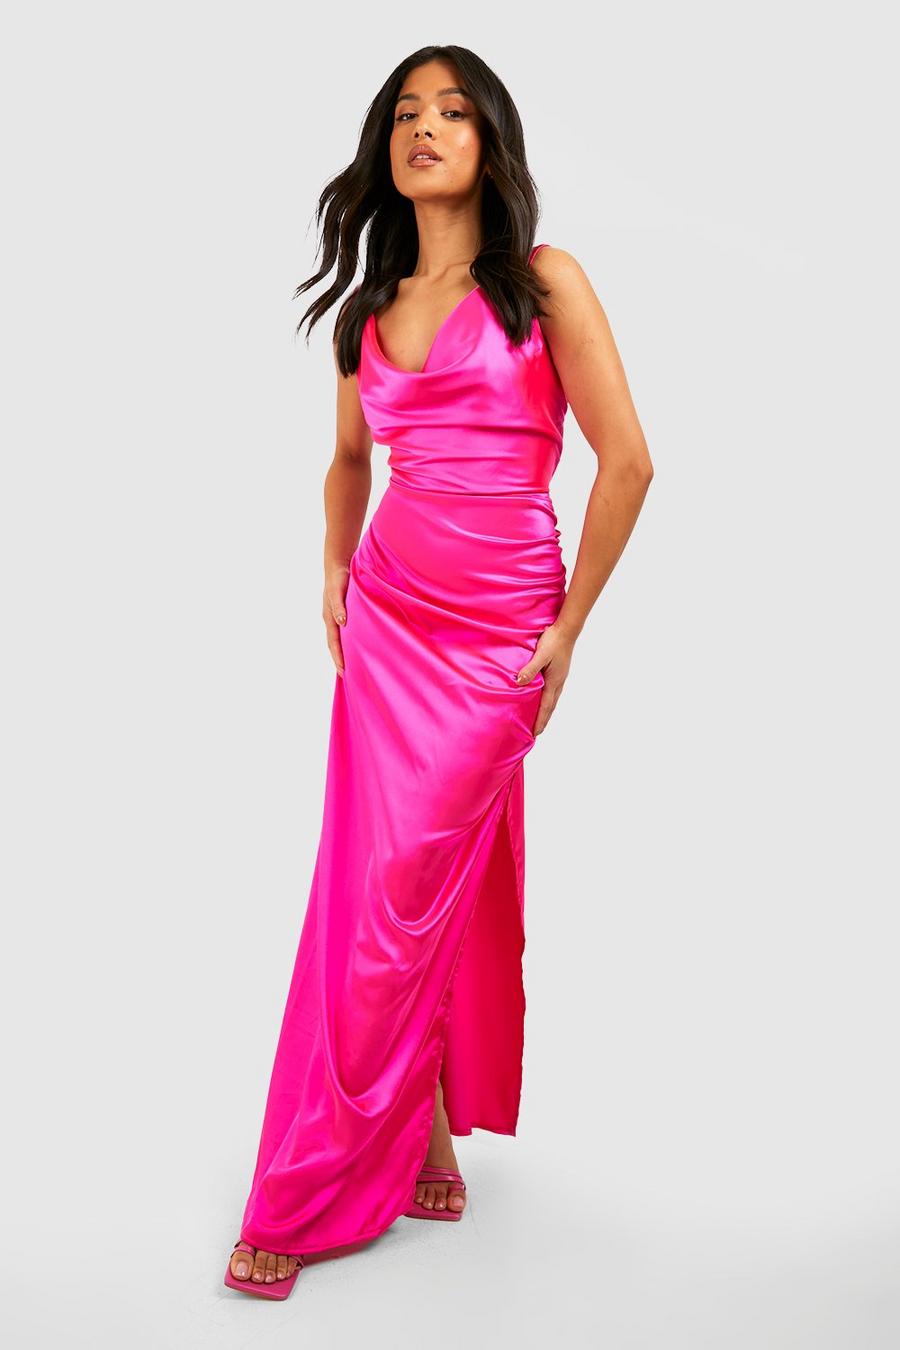 Hot pink Petite Satin Cowl Front Bias Cut Maxi Dress